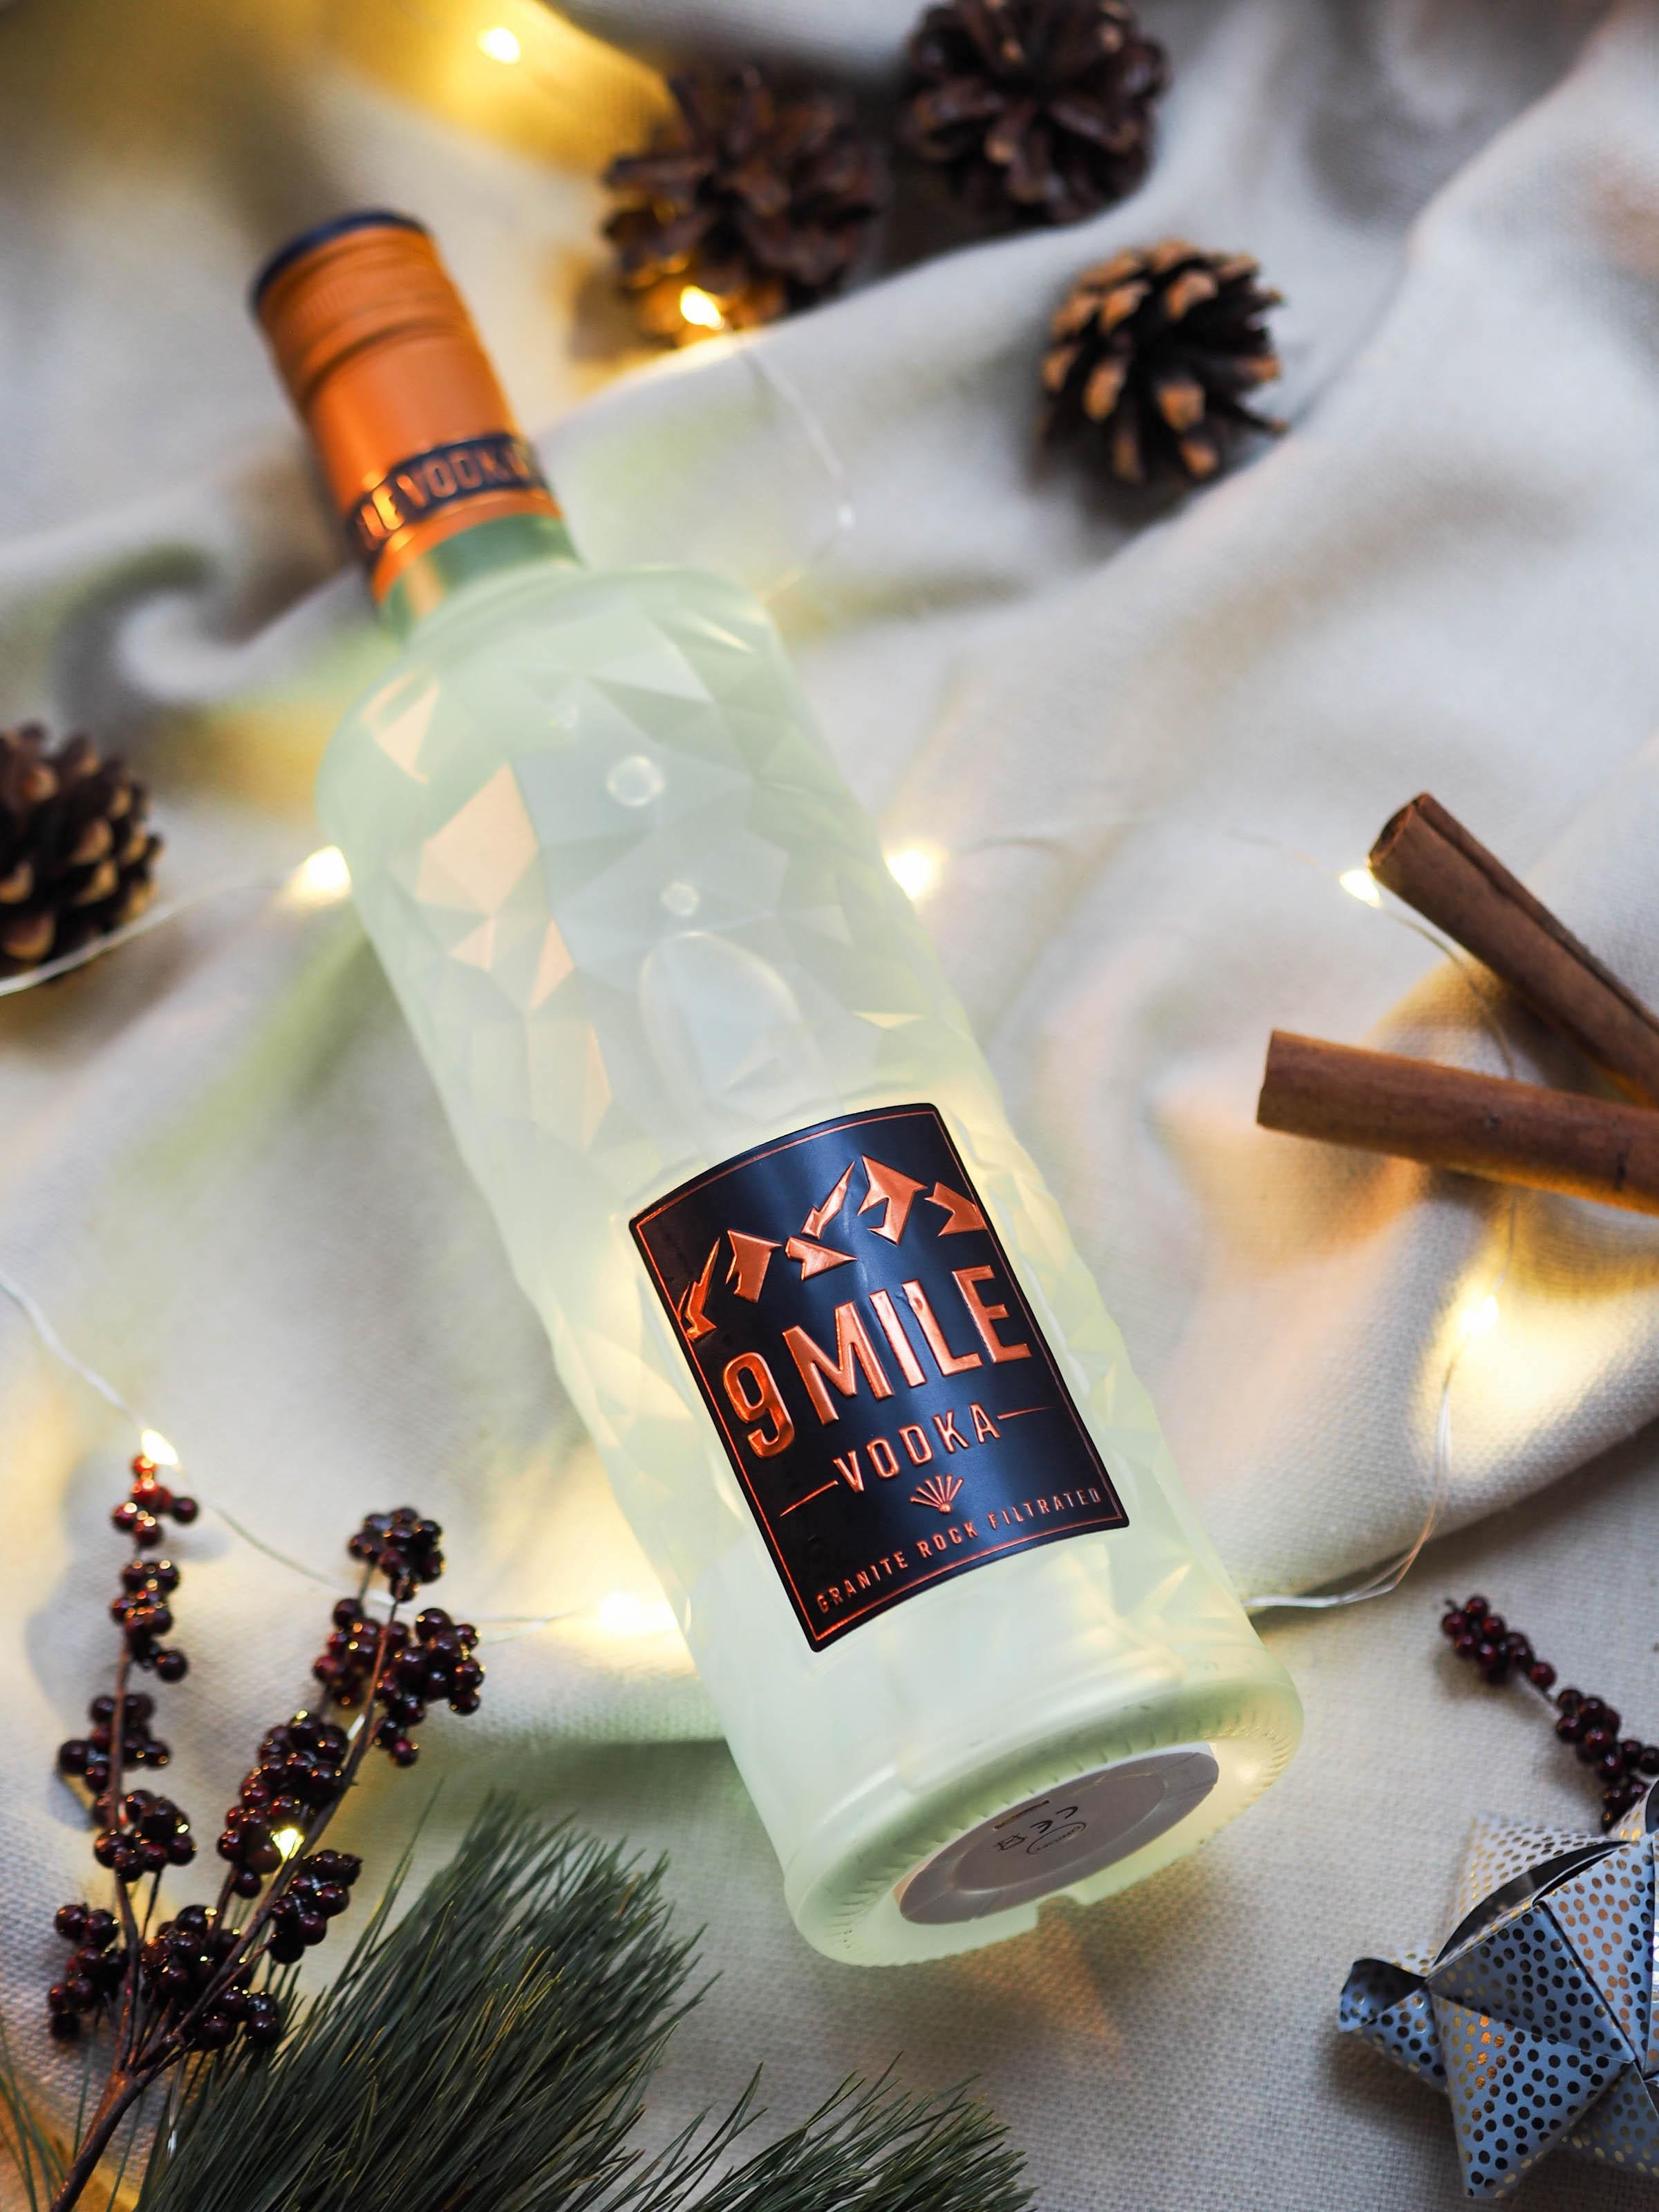 (Er-)Leuchtet: 9 Mile Vodka in stylisher Flasche mit integriertem LED-Licht #geschenkideen #9milevodka